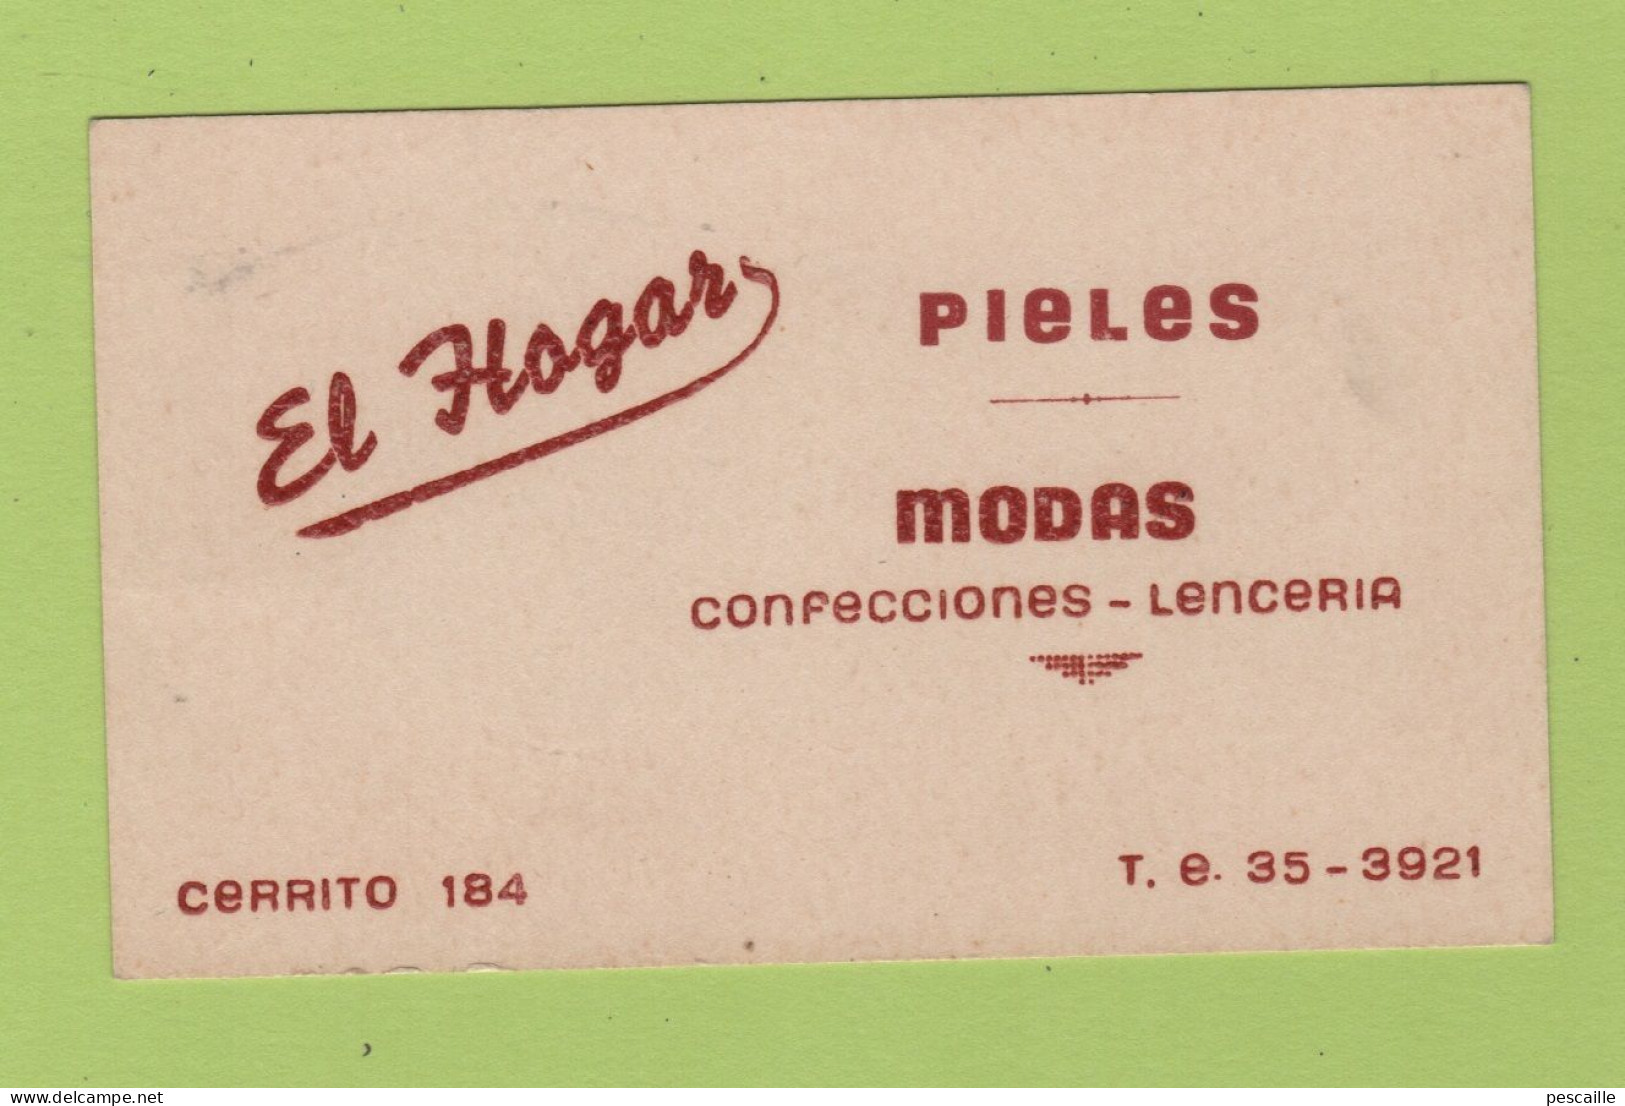 CARTE COMMERCIALE A LOCALISER EL HOGAR - PIELES / MODAS CONFECCIONES LENCERIA / CERRITO 184 / T.E. 35-3921 - Visiting Cards